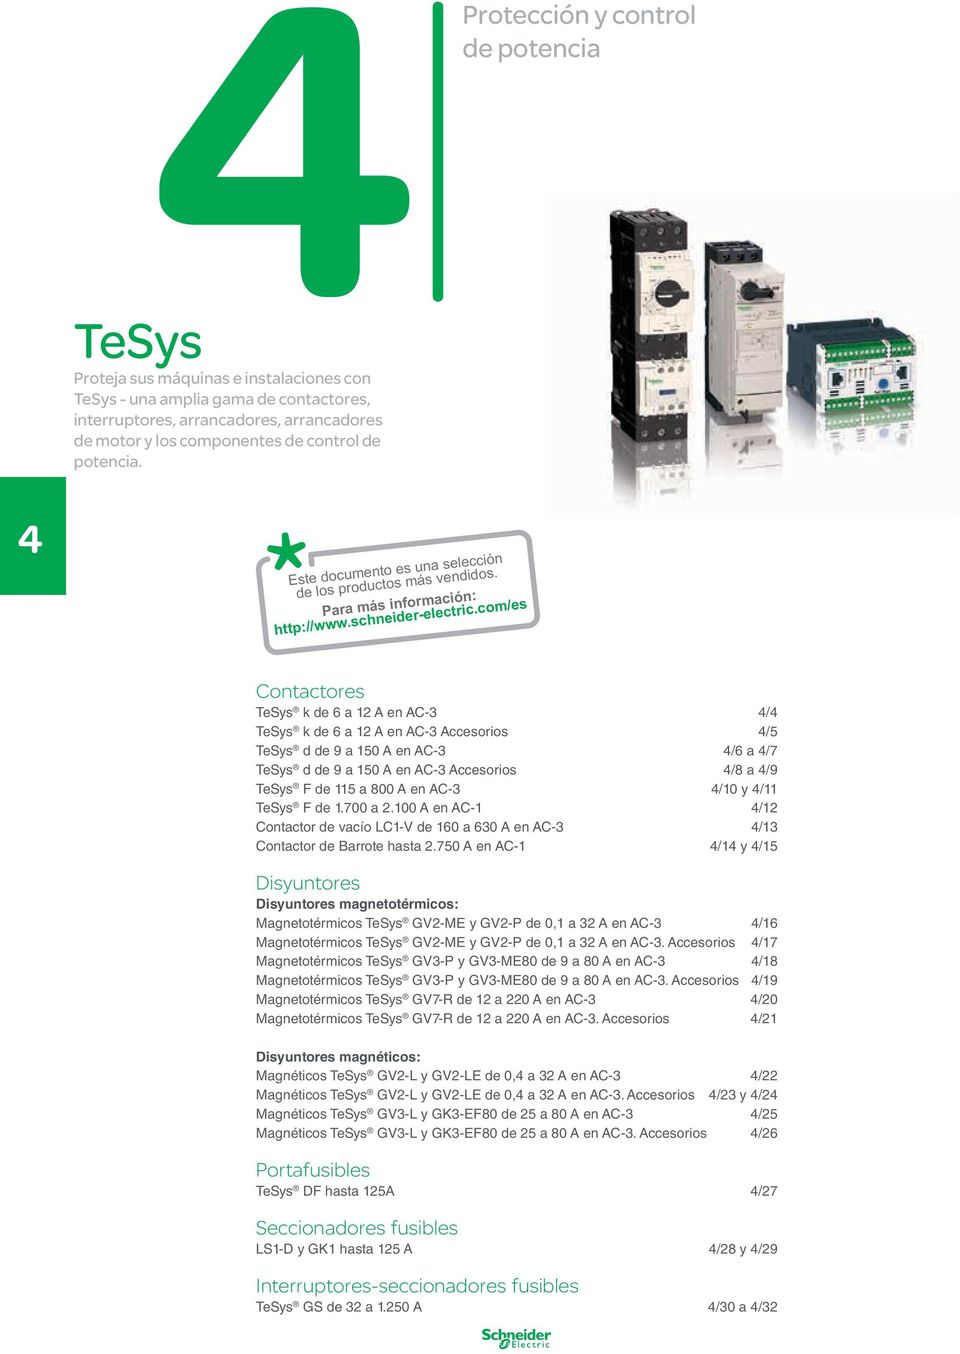 com/es Contactores TeSys k de 6 a 12 A en AC-3 / TeSys k de 6 a 12 A en AC-3 Accesorios /5 TeSys d de 9 a 1 A en AC-3 /6 a /7 TeSys d de 9 a 1 A en AC-3 Accesorios /8 a /9 TeSys F de 115 a 800 A en